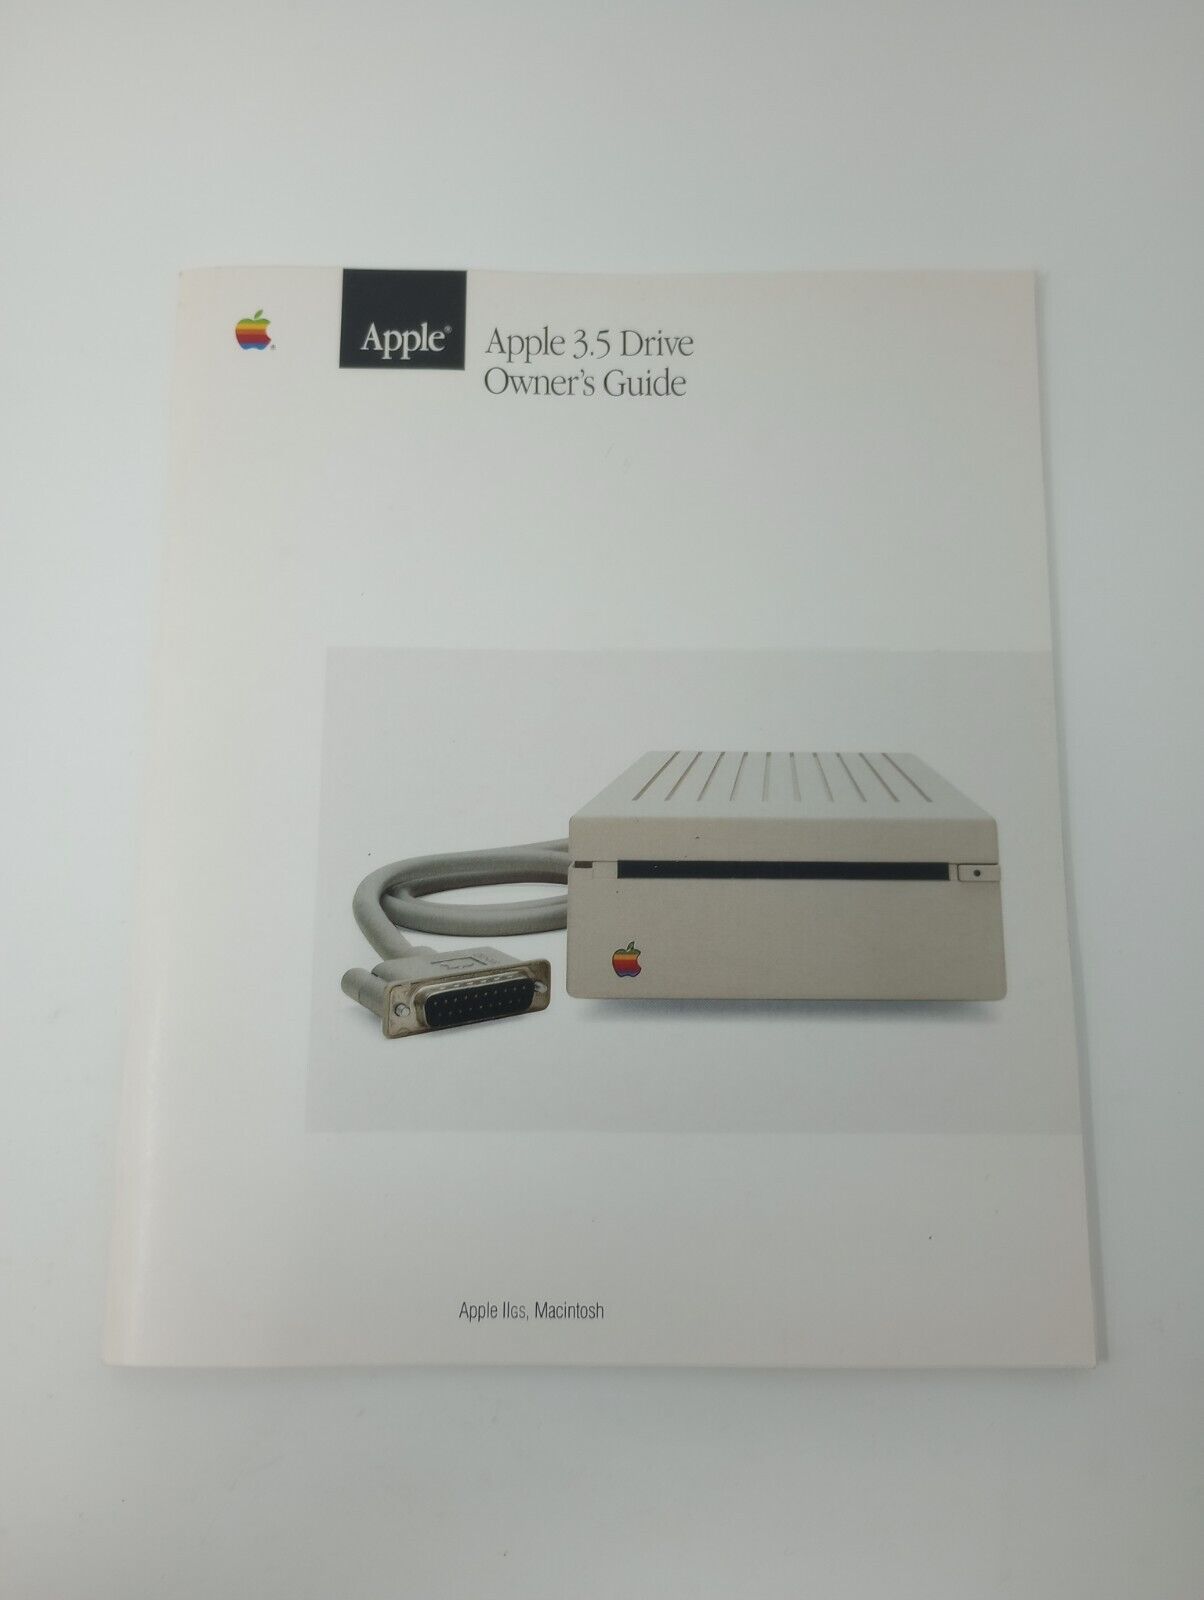 Apple 3.5 Drive Owner's Guide 030-2050-B (Apple, 1986) Apple IIGS, Macintosh 